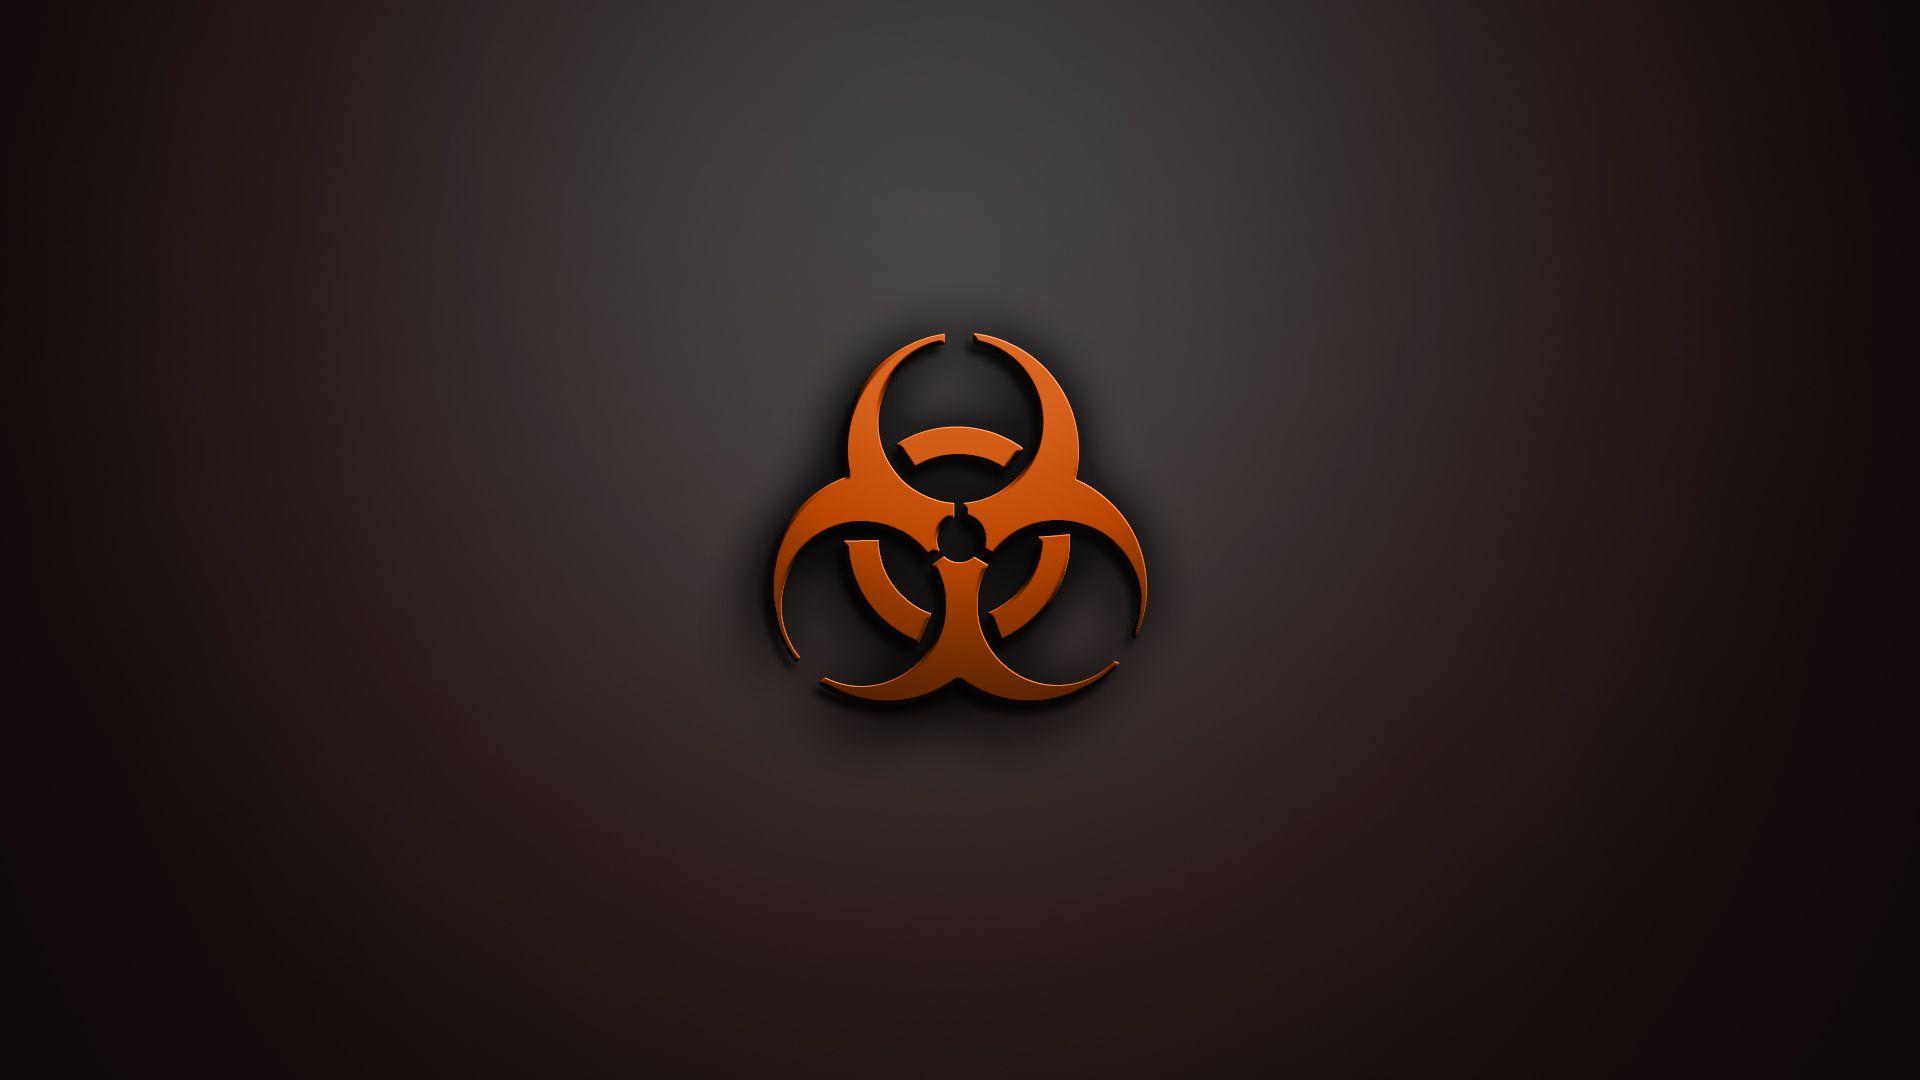 Biohazard Computer Wallpaper, Desktop Background 1920x1080 Id